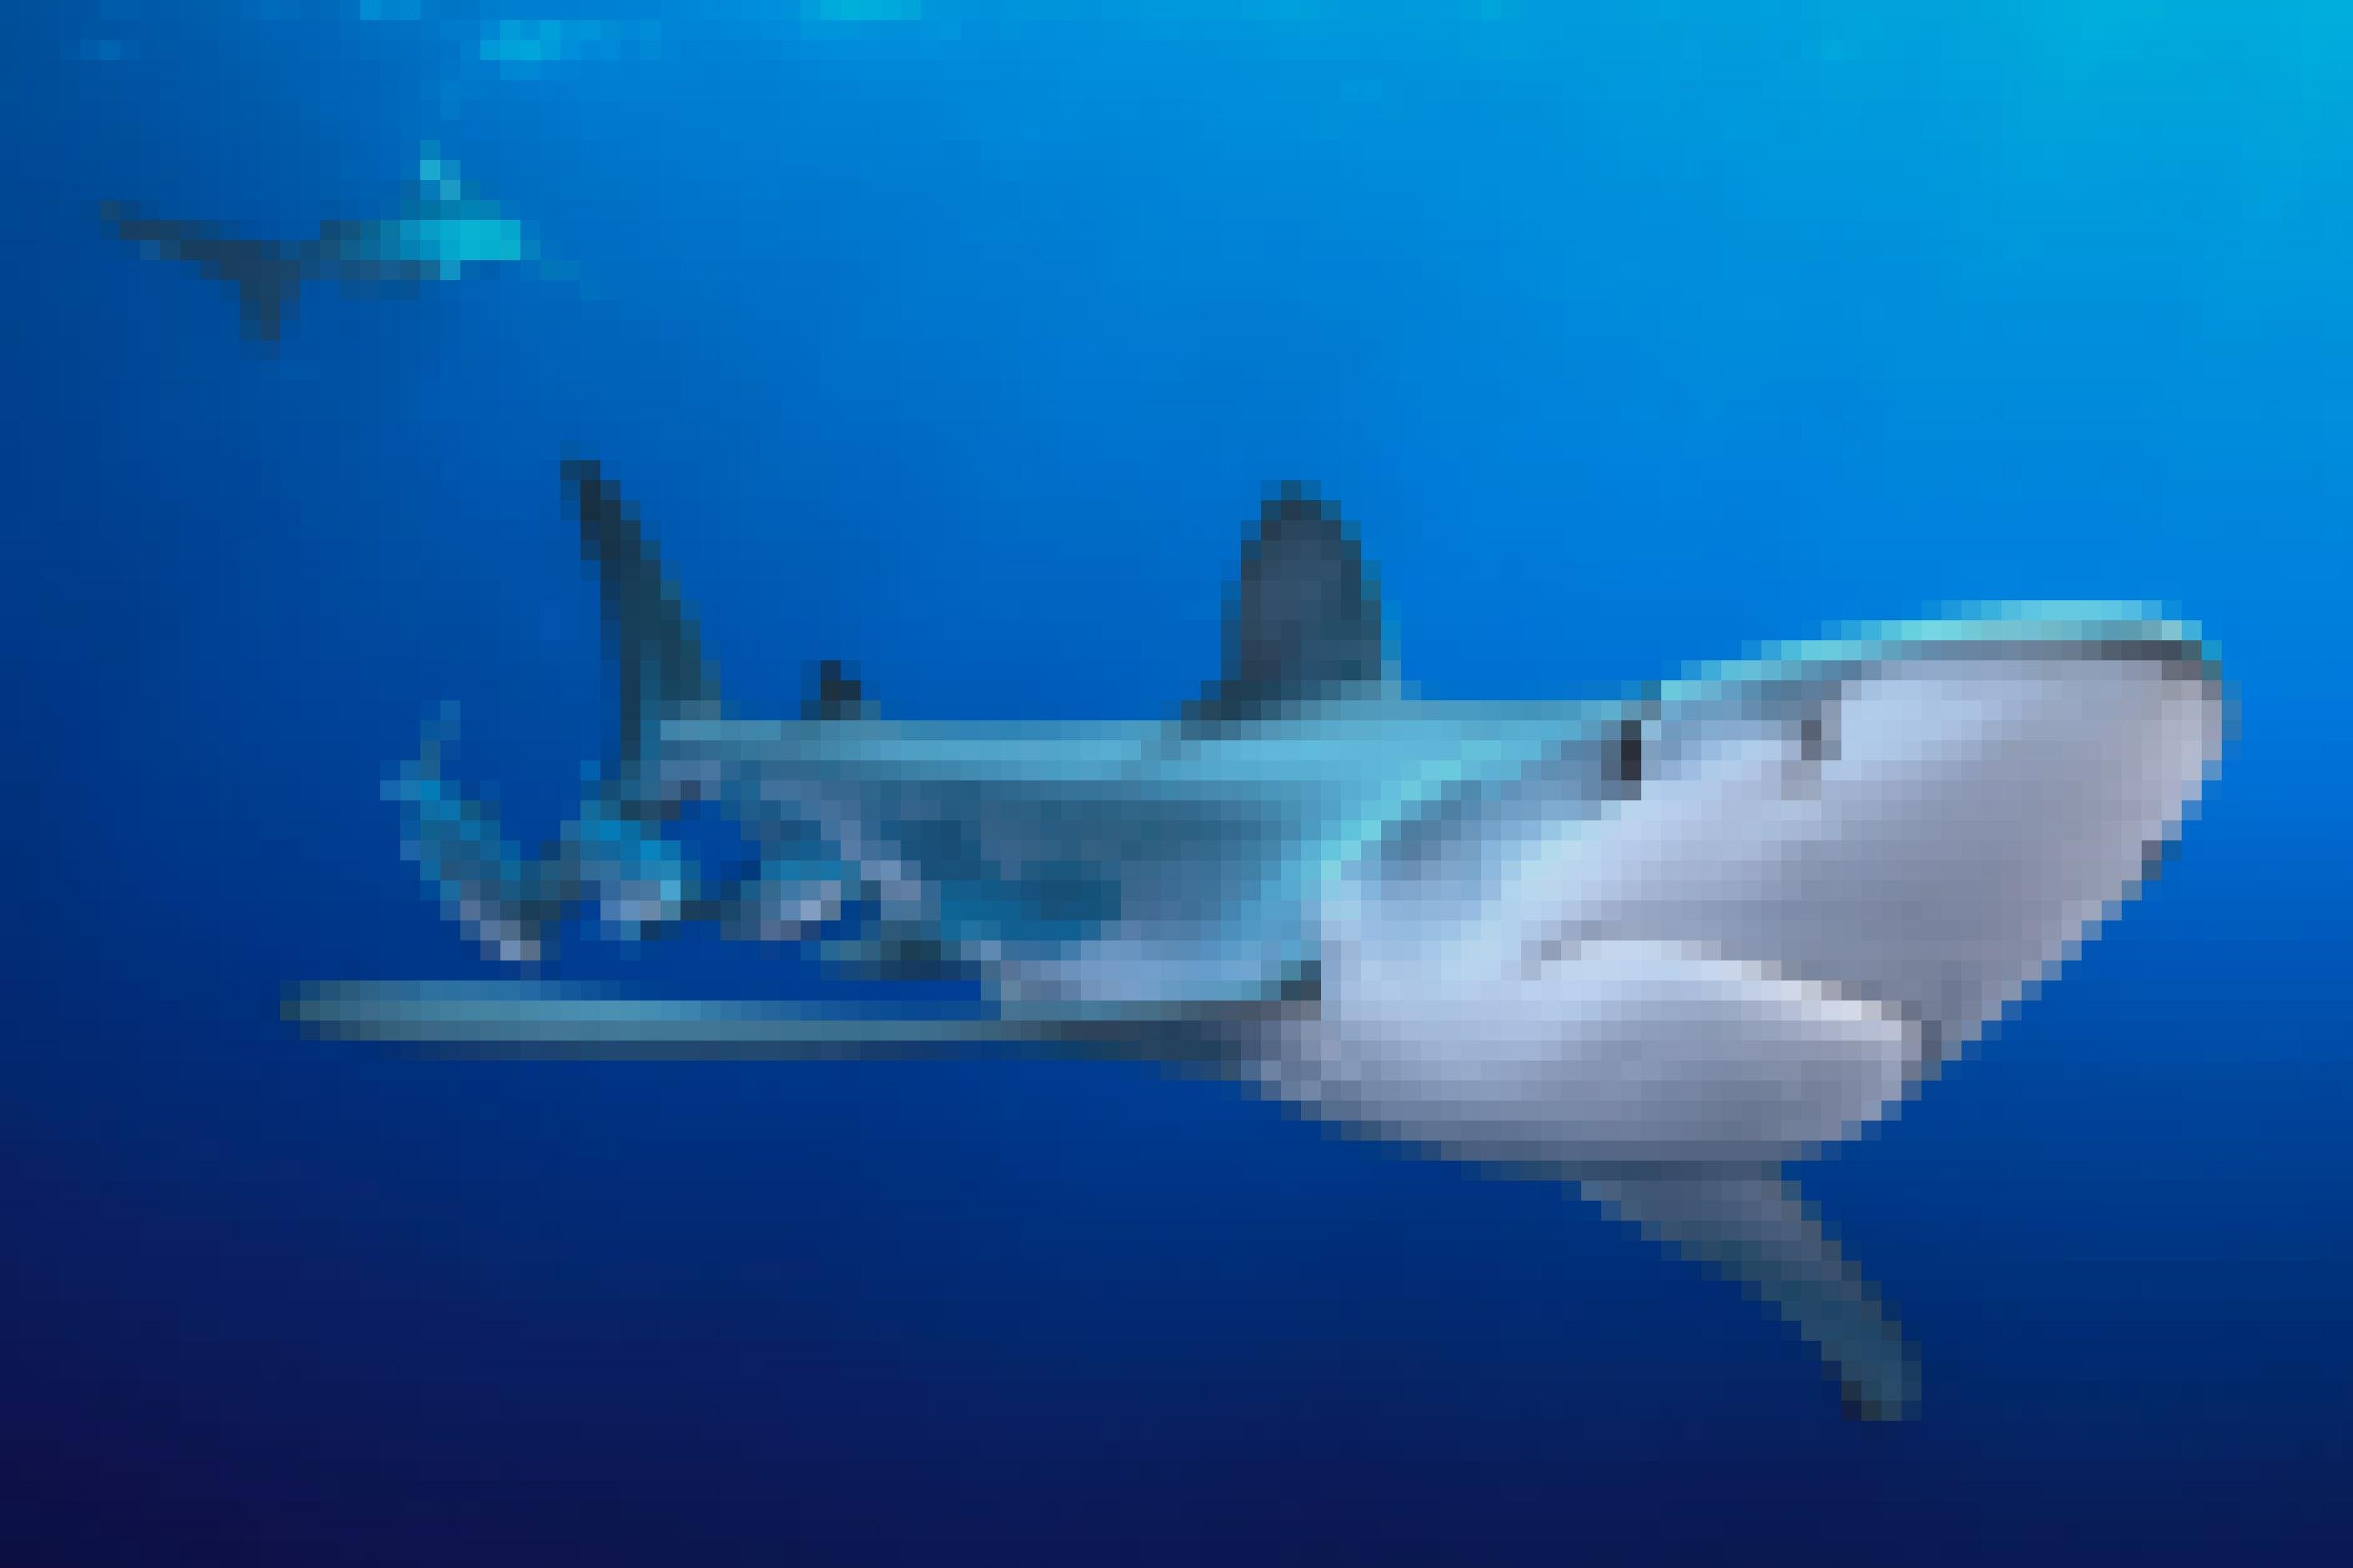 Ein weiterer Blauhai im Meer, gefolgt von kleineren Fischen. Im Hintergrund schwimmt ein zweiter Hai.